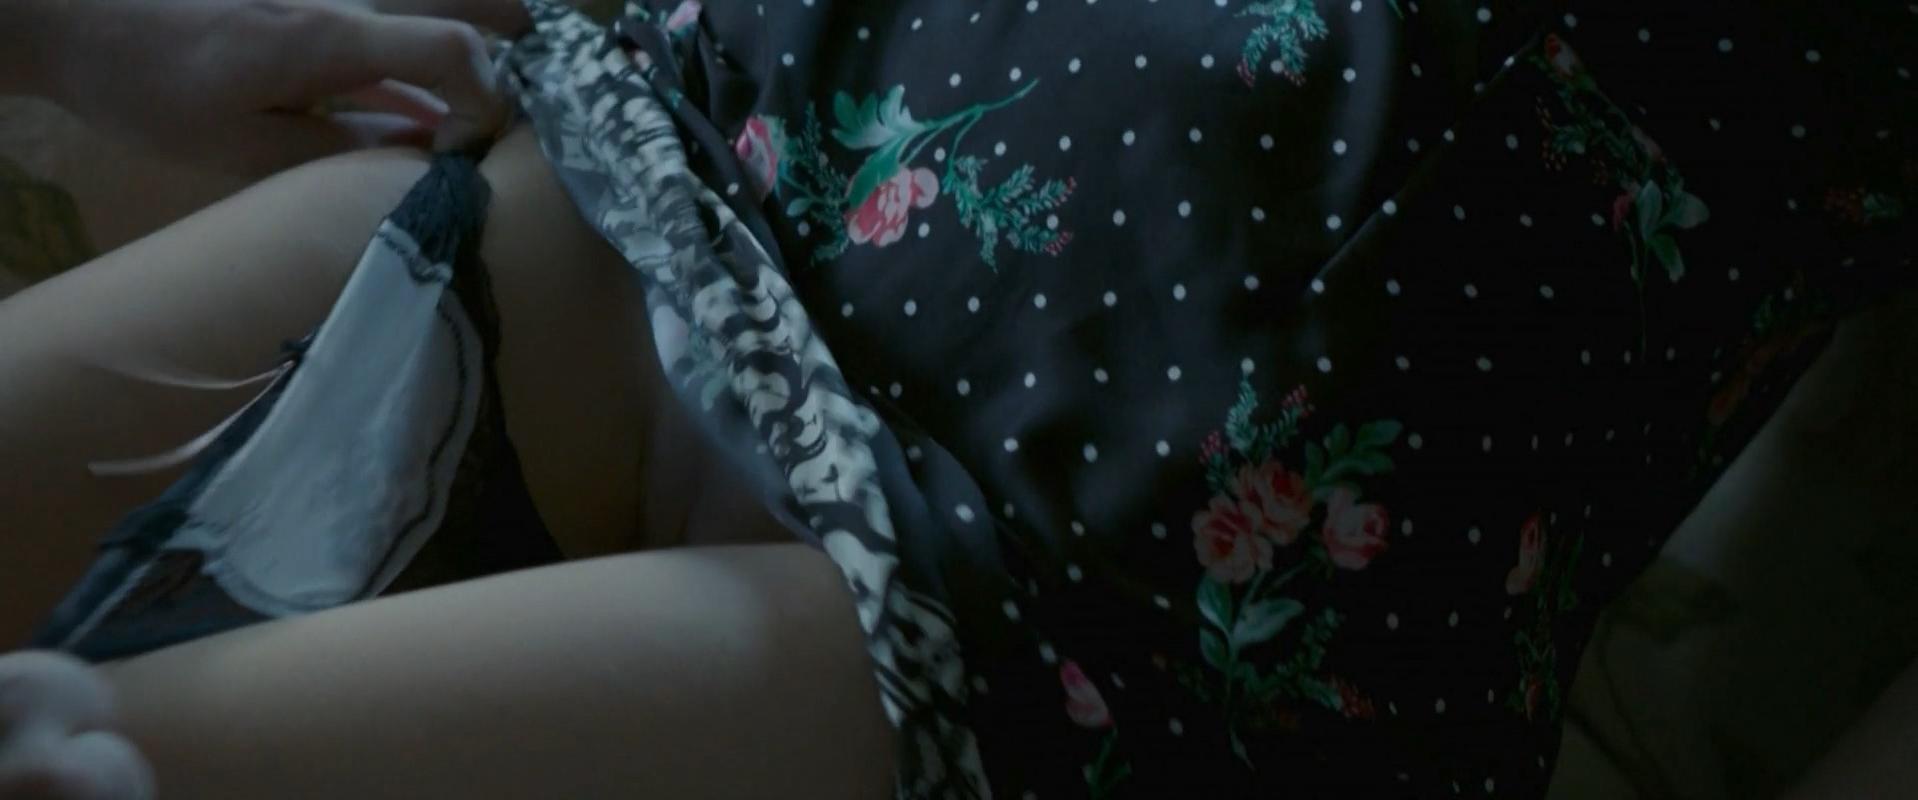 Emmanuelle Beart nude - My Mistress (2014)